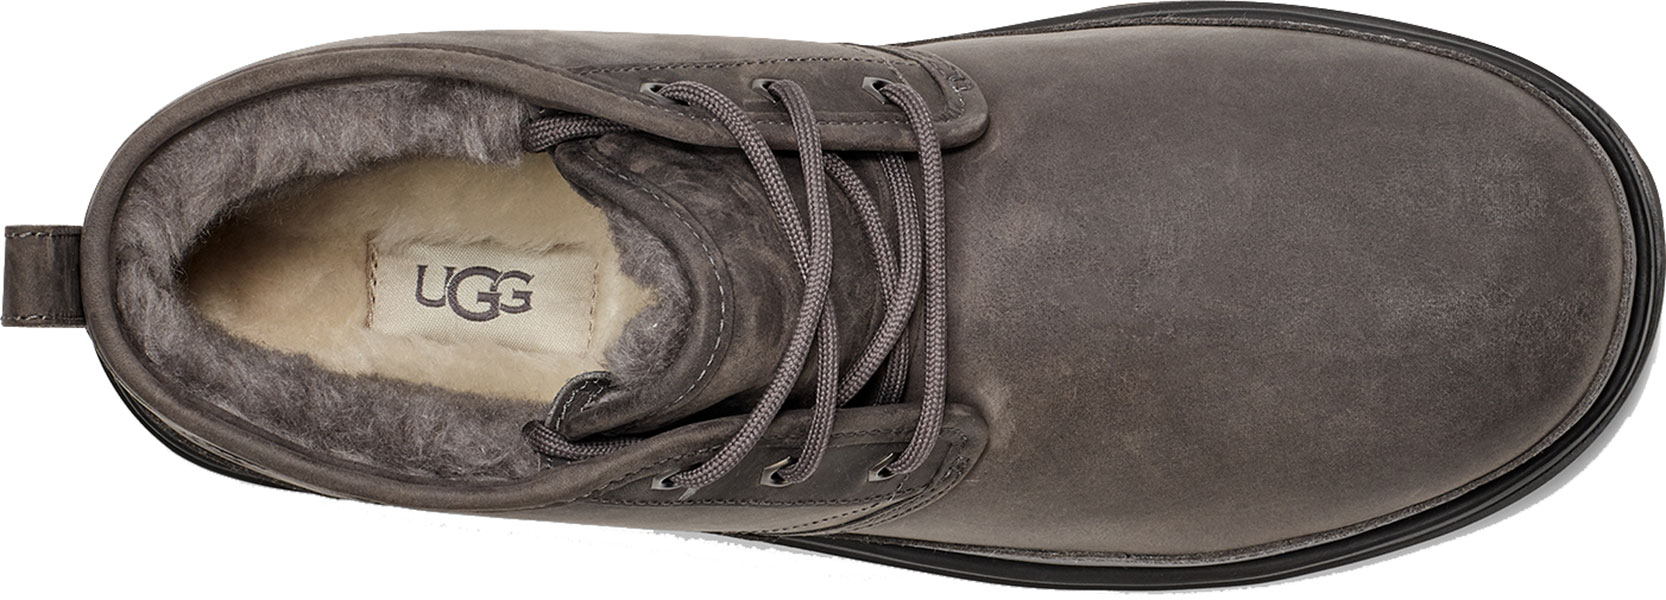 UGG Schuhe Stiefel Boots NEUMEL WEATHER II Stiefel 2022 dark grey Stiefeletten